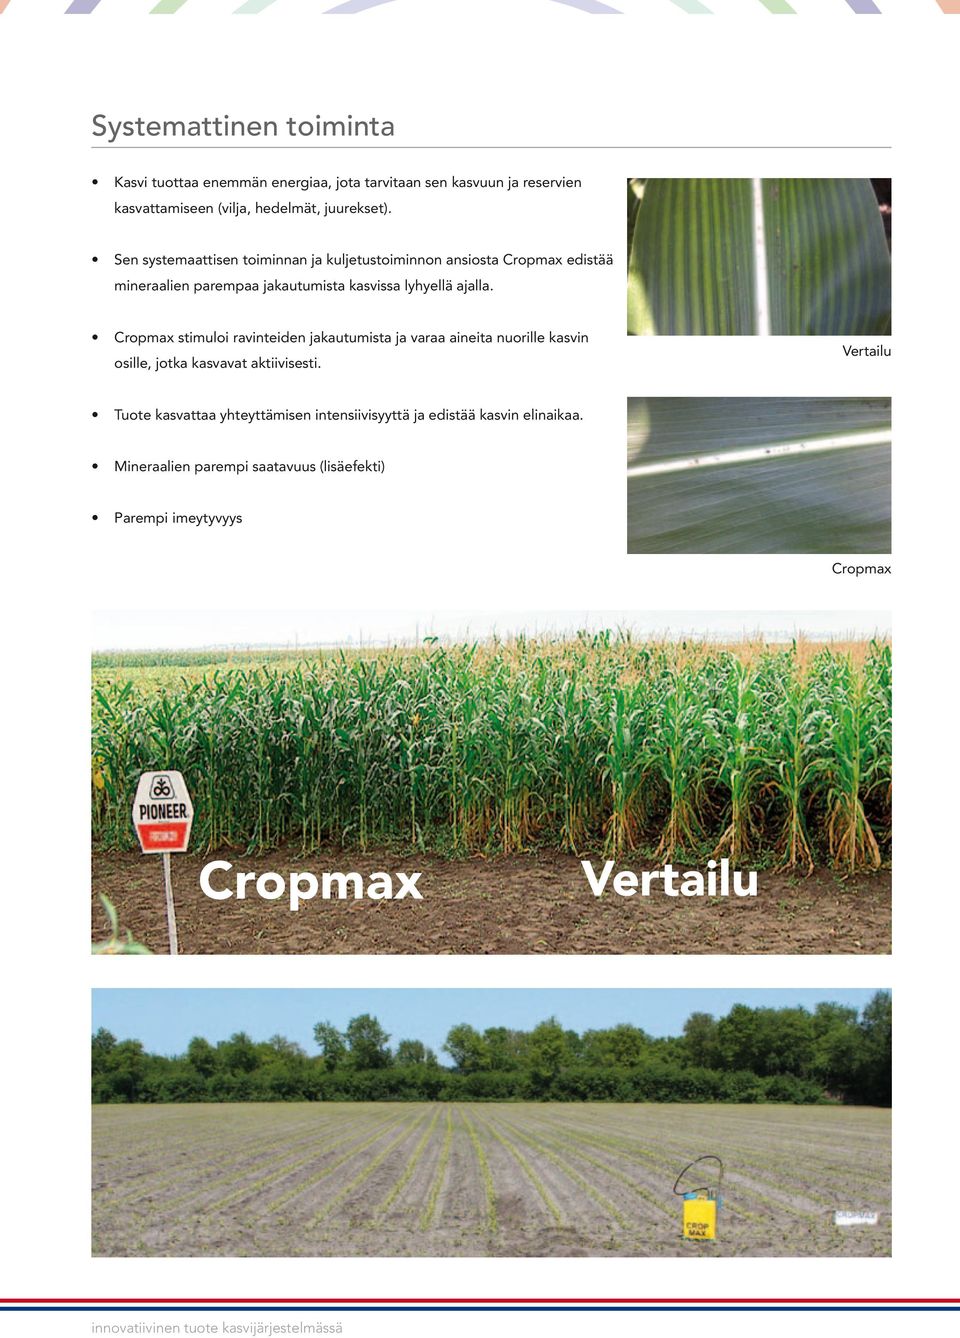 Cropmax stimuloi ravinteiden jakautumista ja varaa aineita nuorille kasvin osille, jotka kasvavat aktiivisesti.